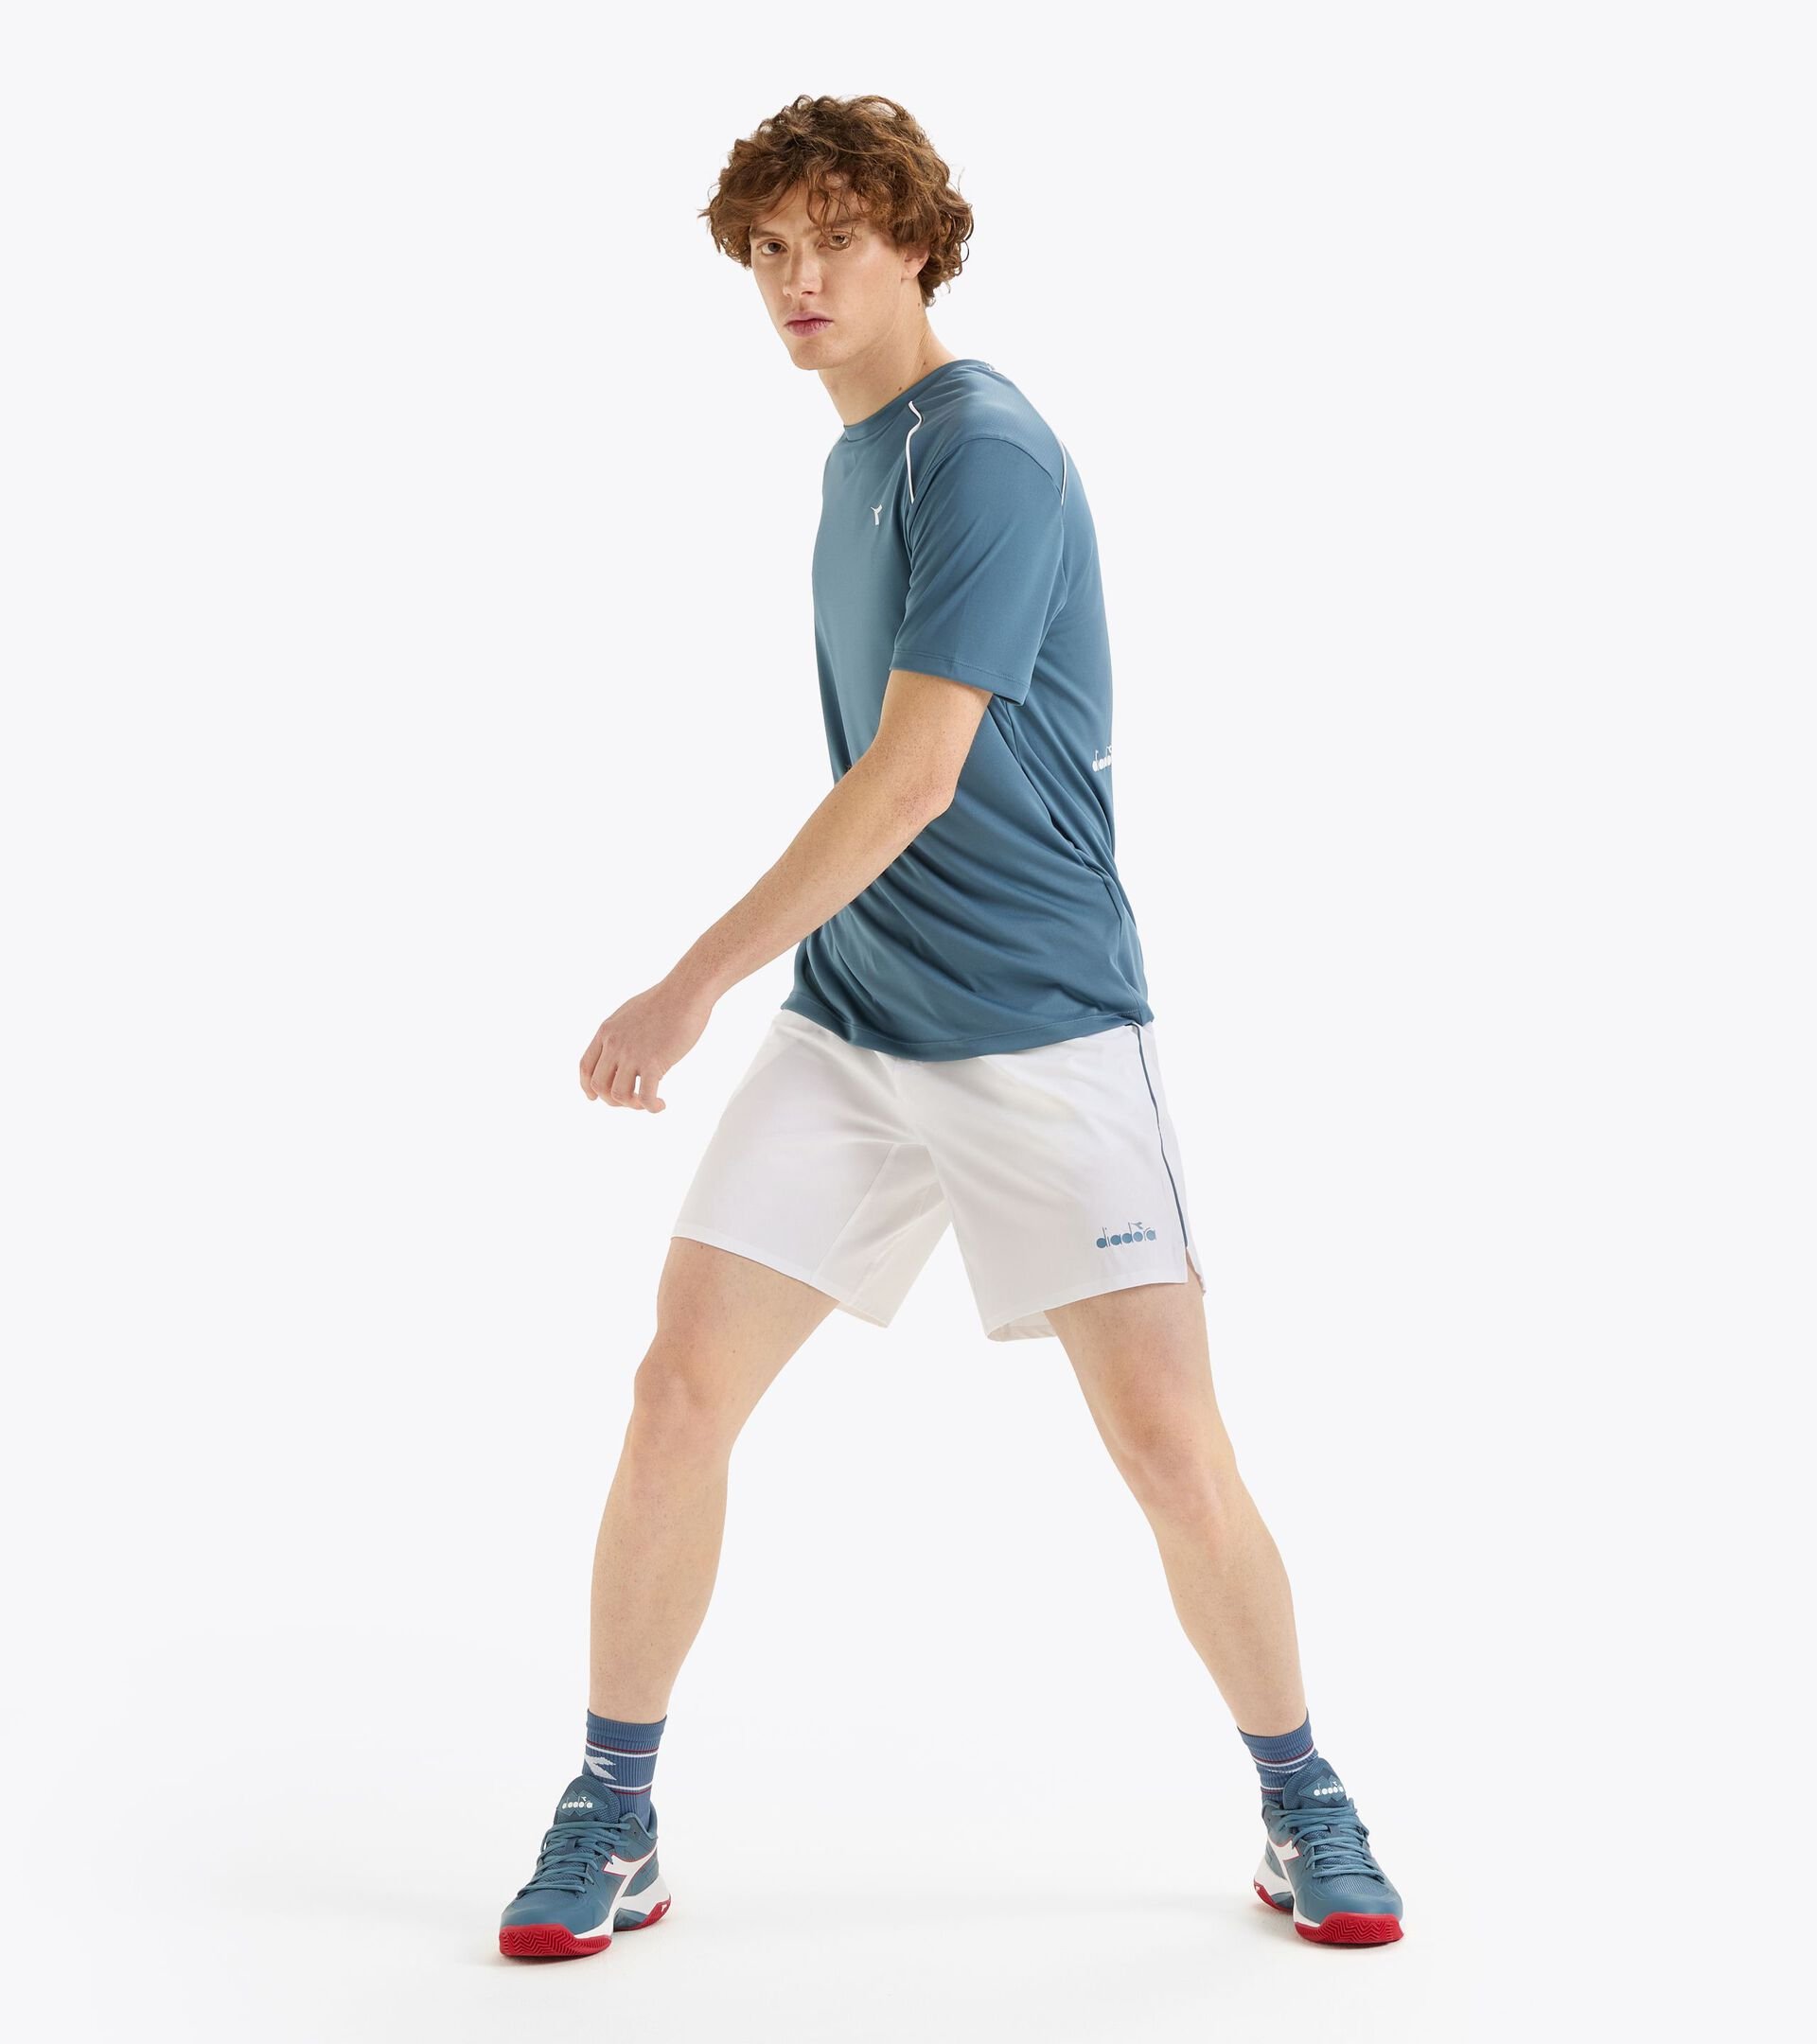 9’’ tennis shorts - Men’s
 SHORTS CORE 9" OPTICAL WHITE - Diadora